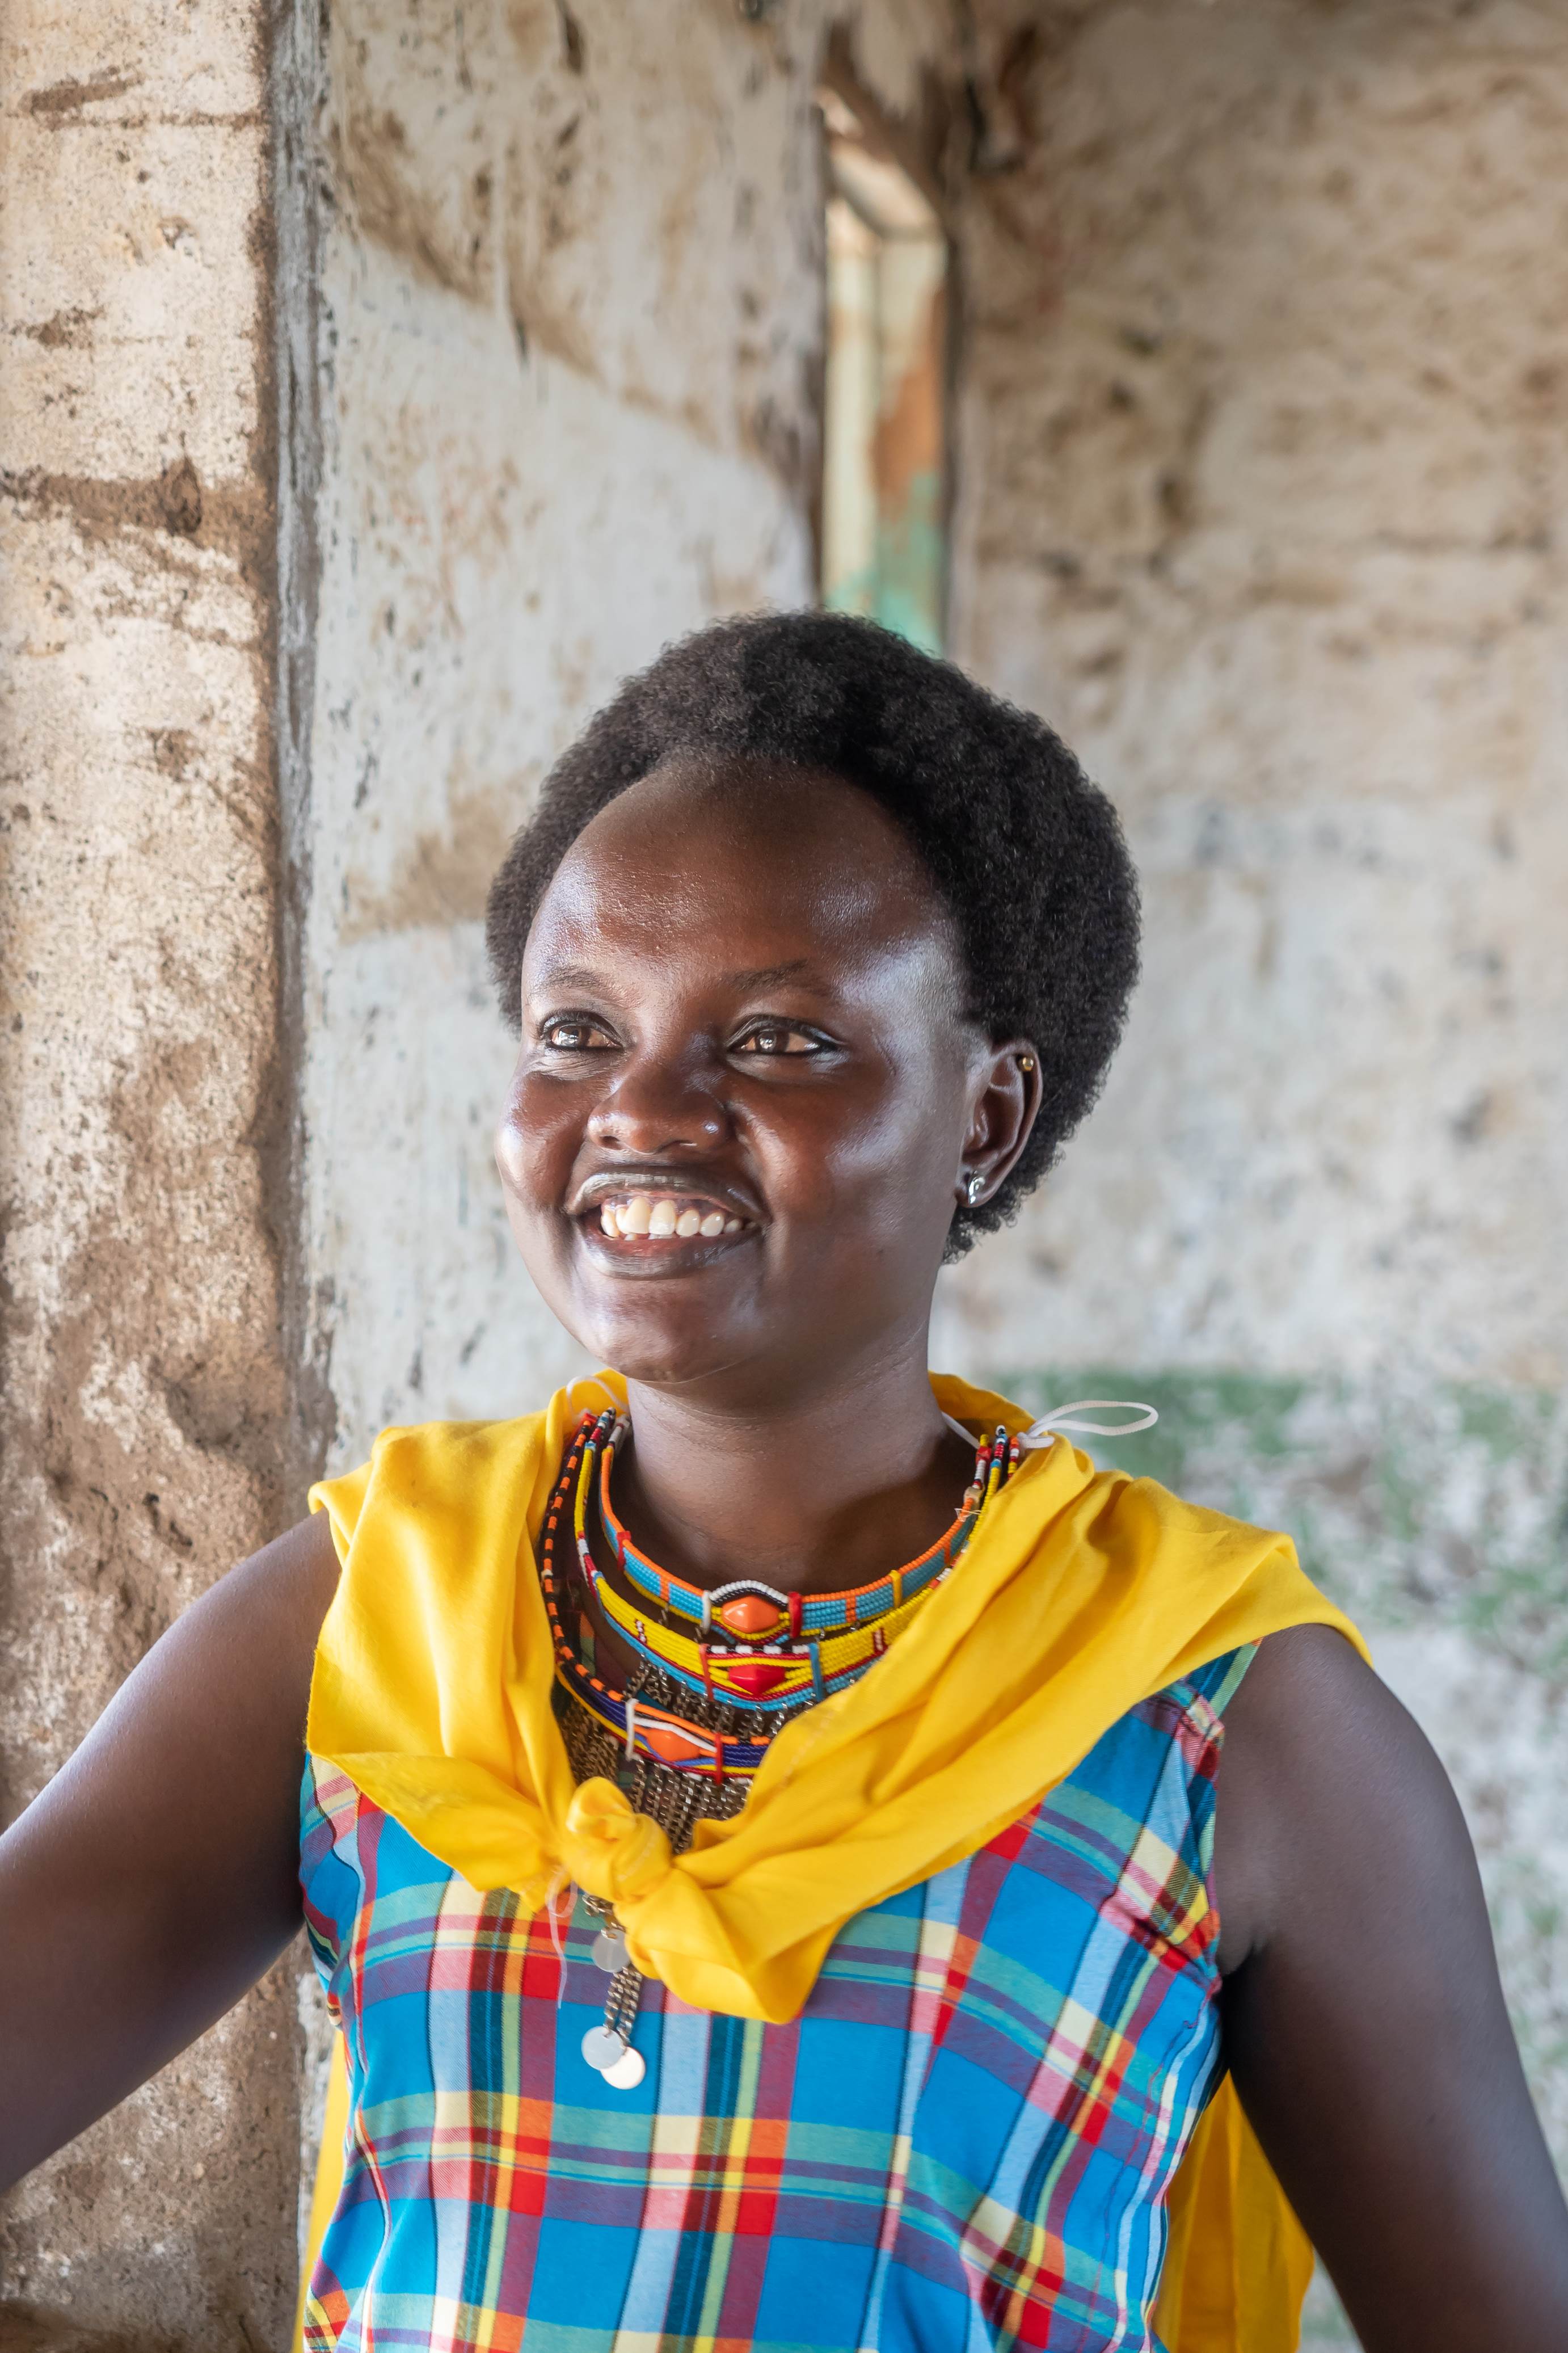 Nancy, a sponsored child from Kenya